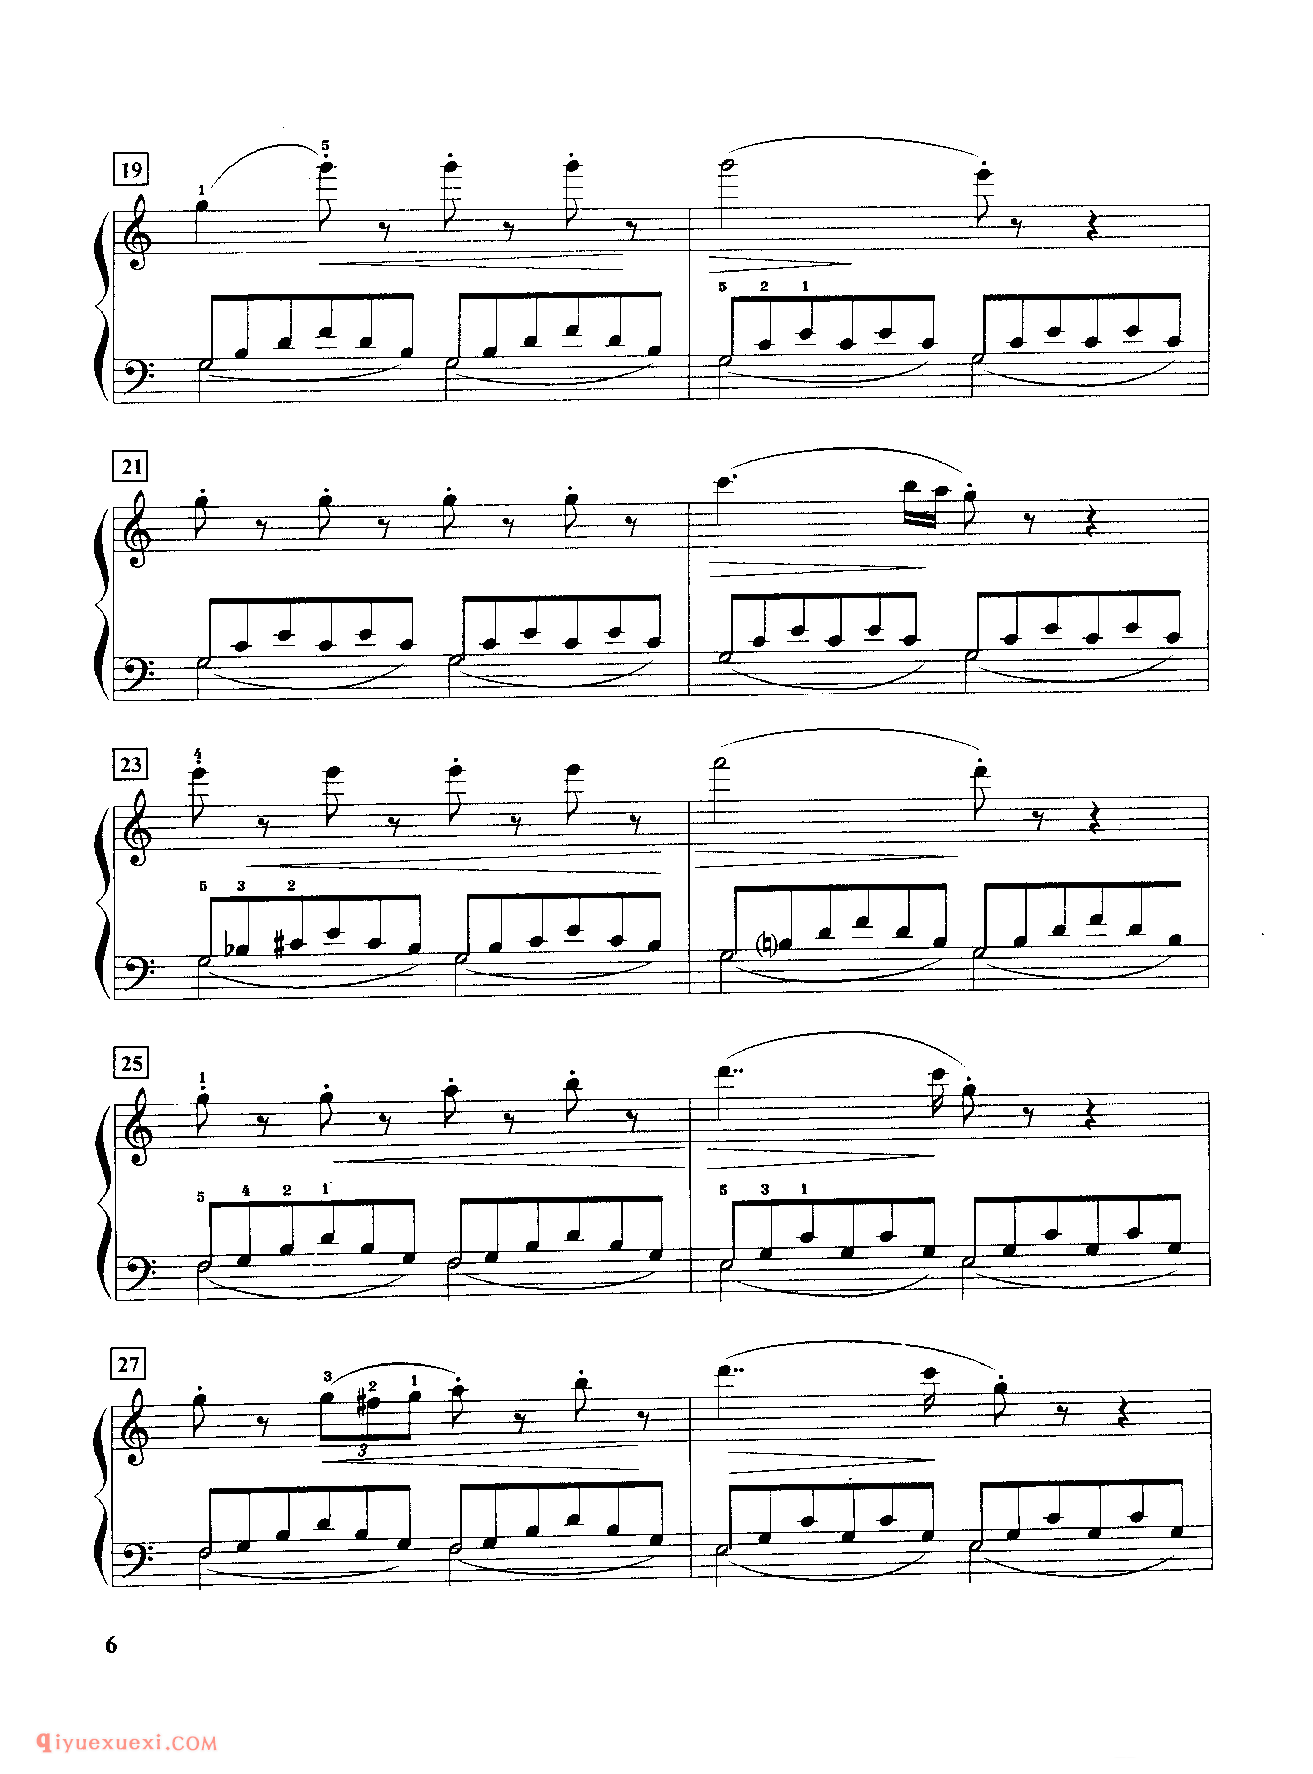 第二条C大调左手分解和弦与保持音练习_车尔尼849钢琴练习曲_黄伊娜